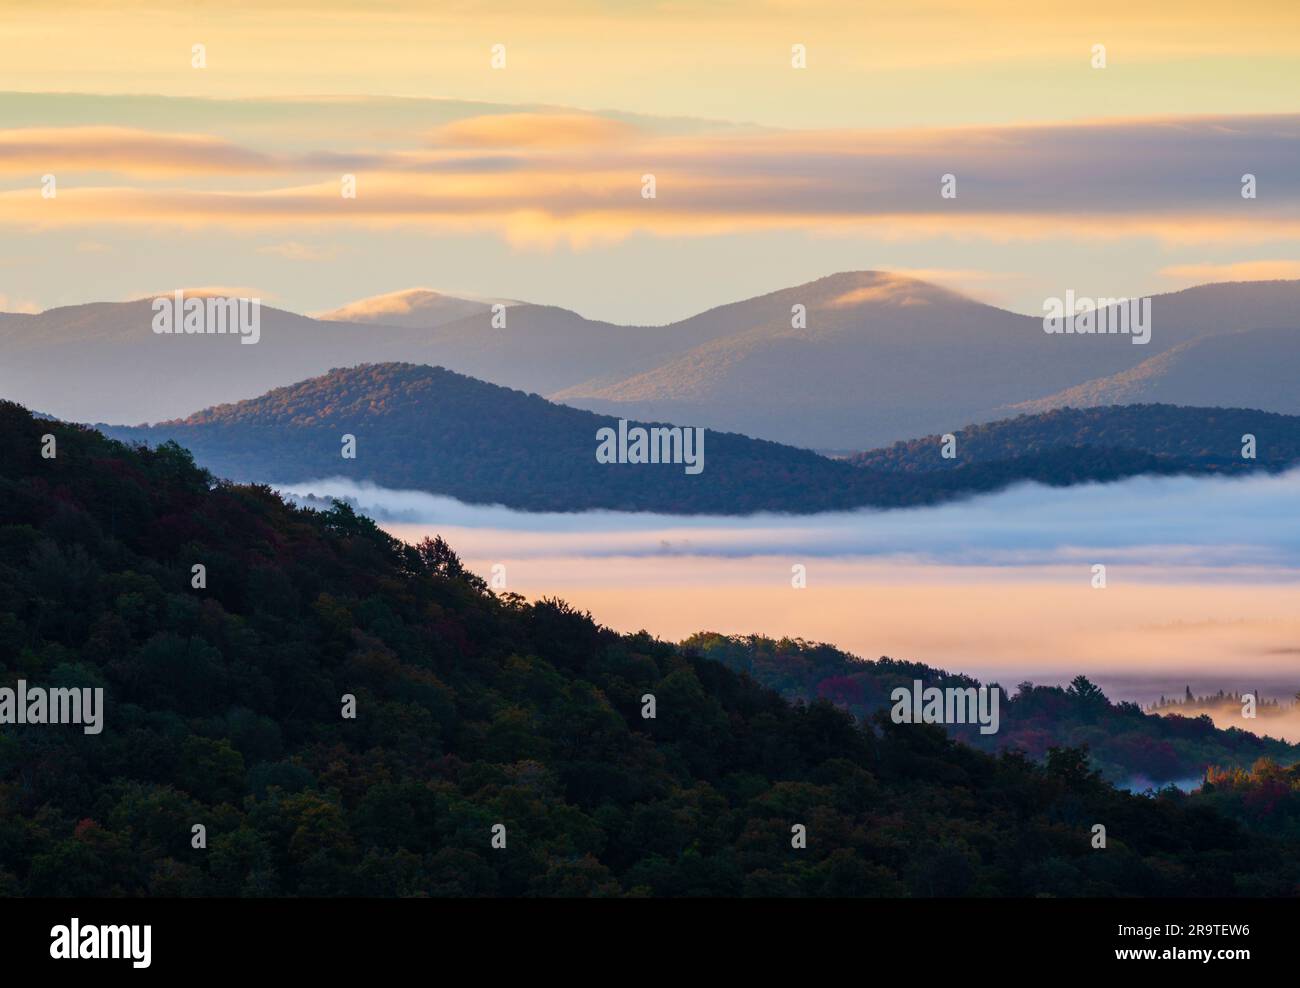 Paesaggio a sud del monte Goodman al tramonto, monti Adirondack, New York, USA Foto Stock